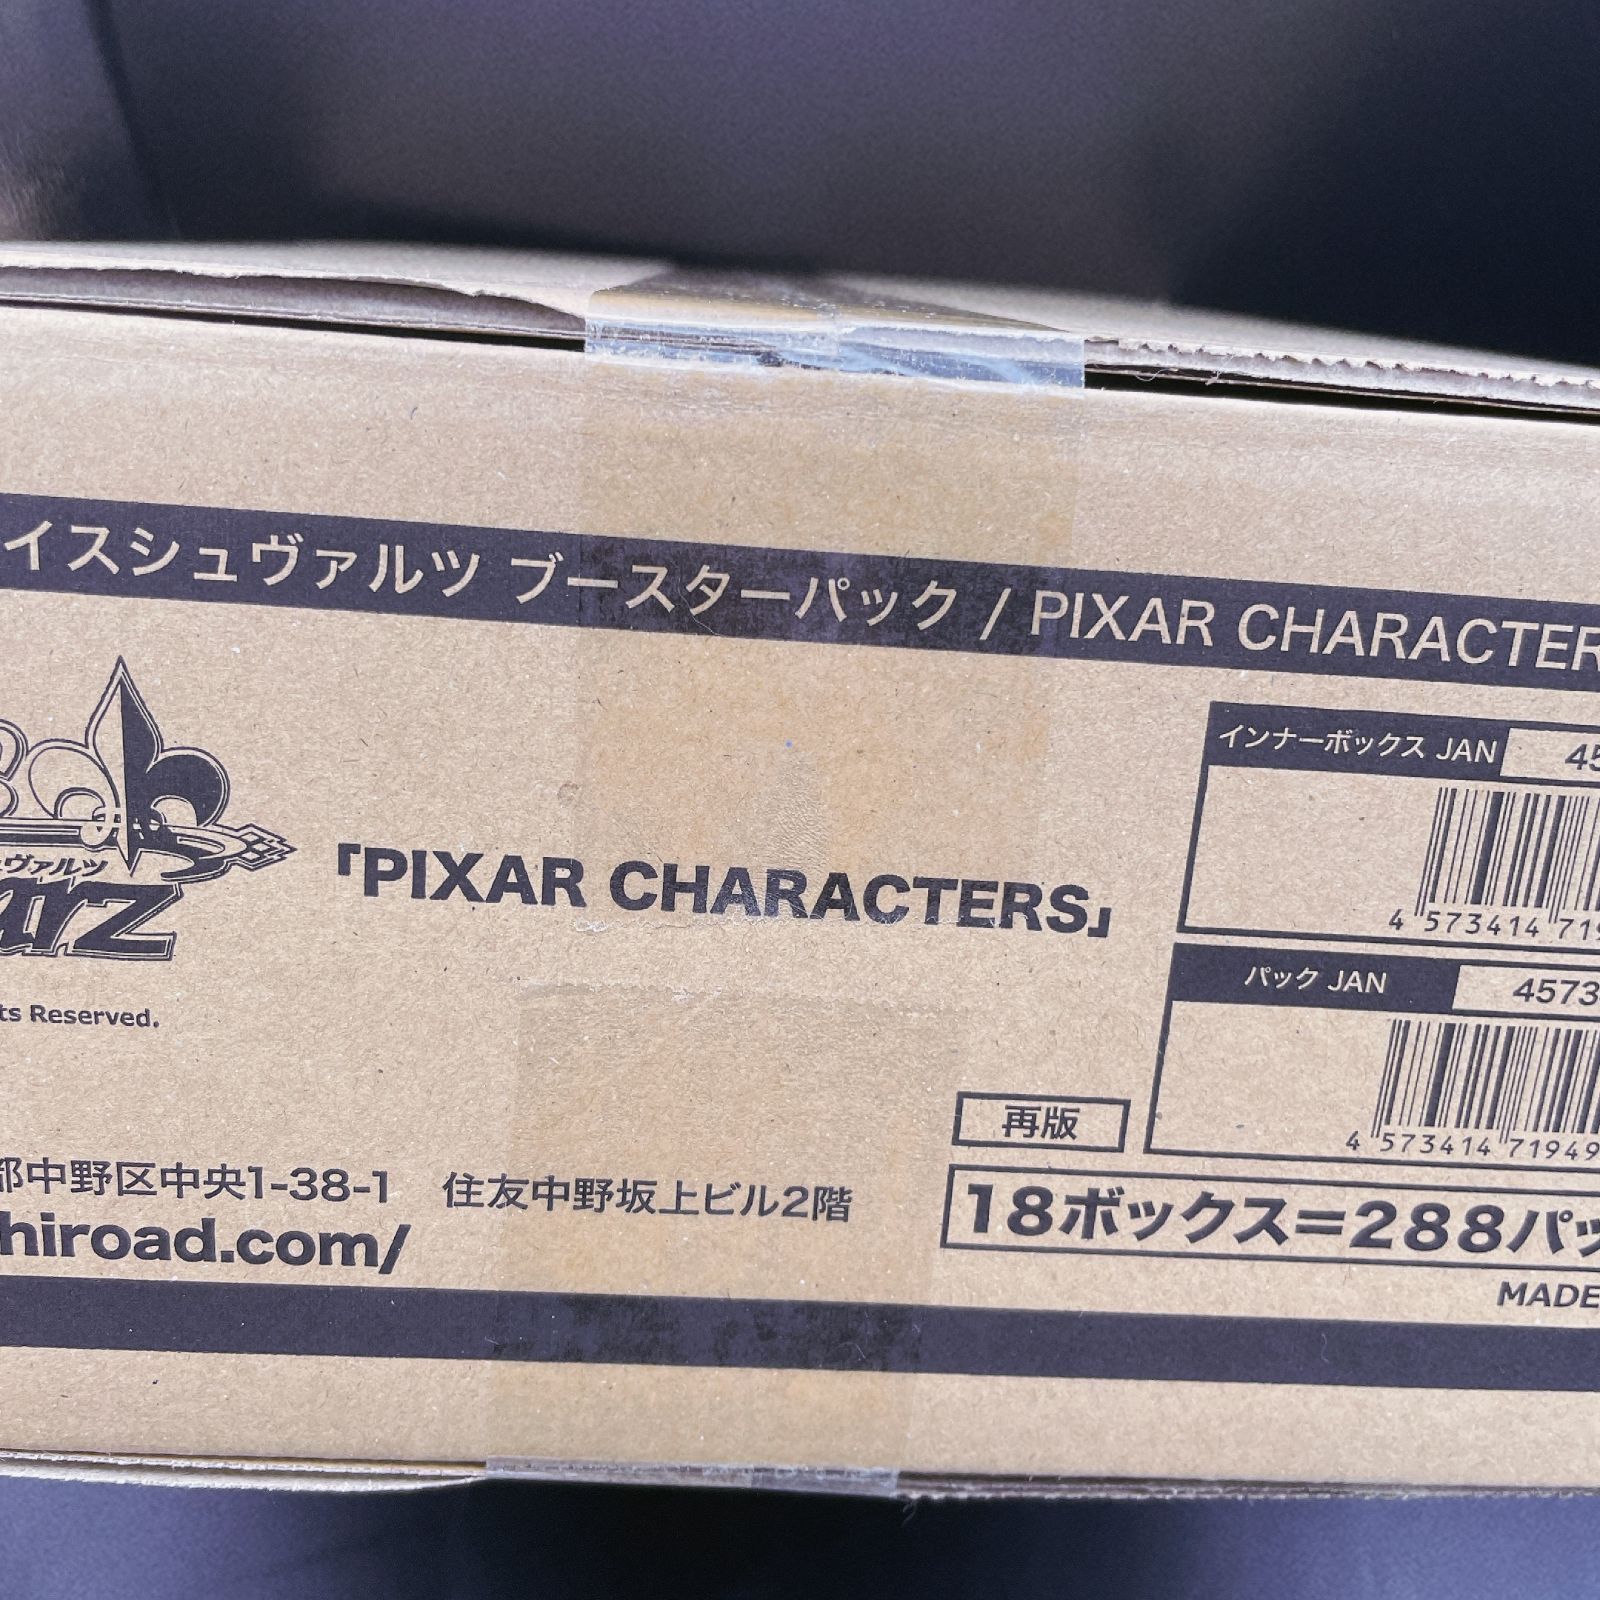 ヴァイス Pixar characters ピクサー 1カートン 18BOXPIXA